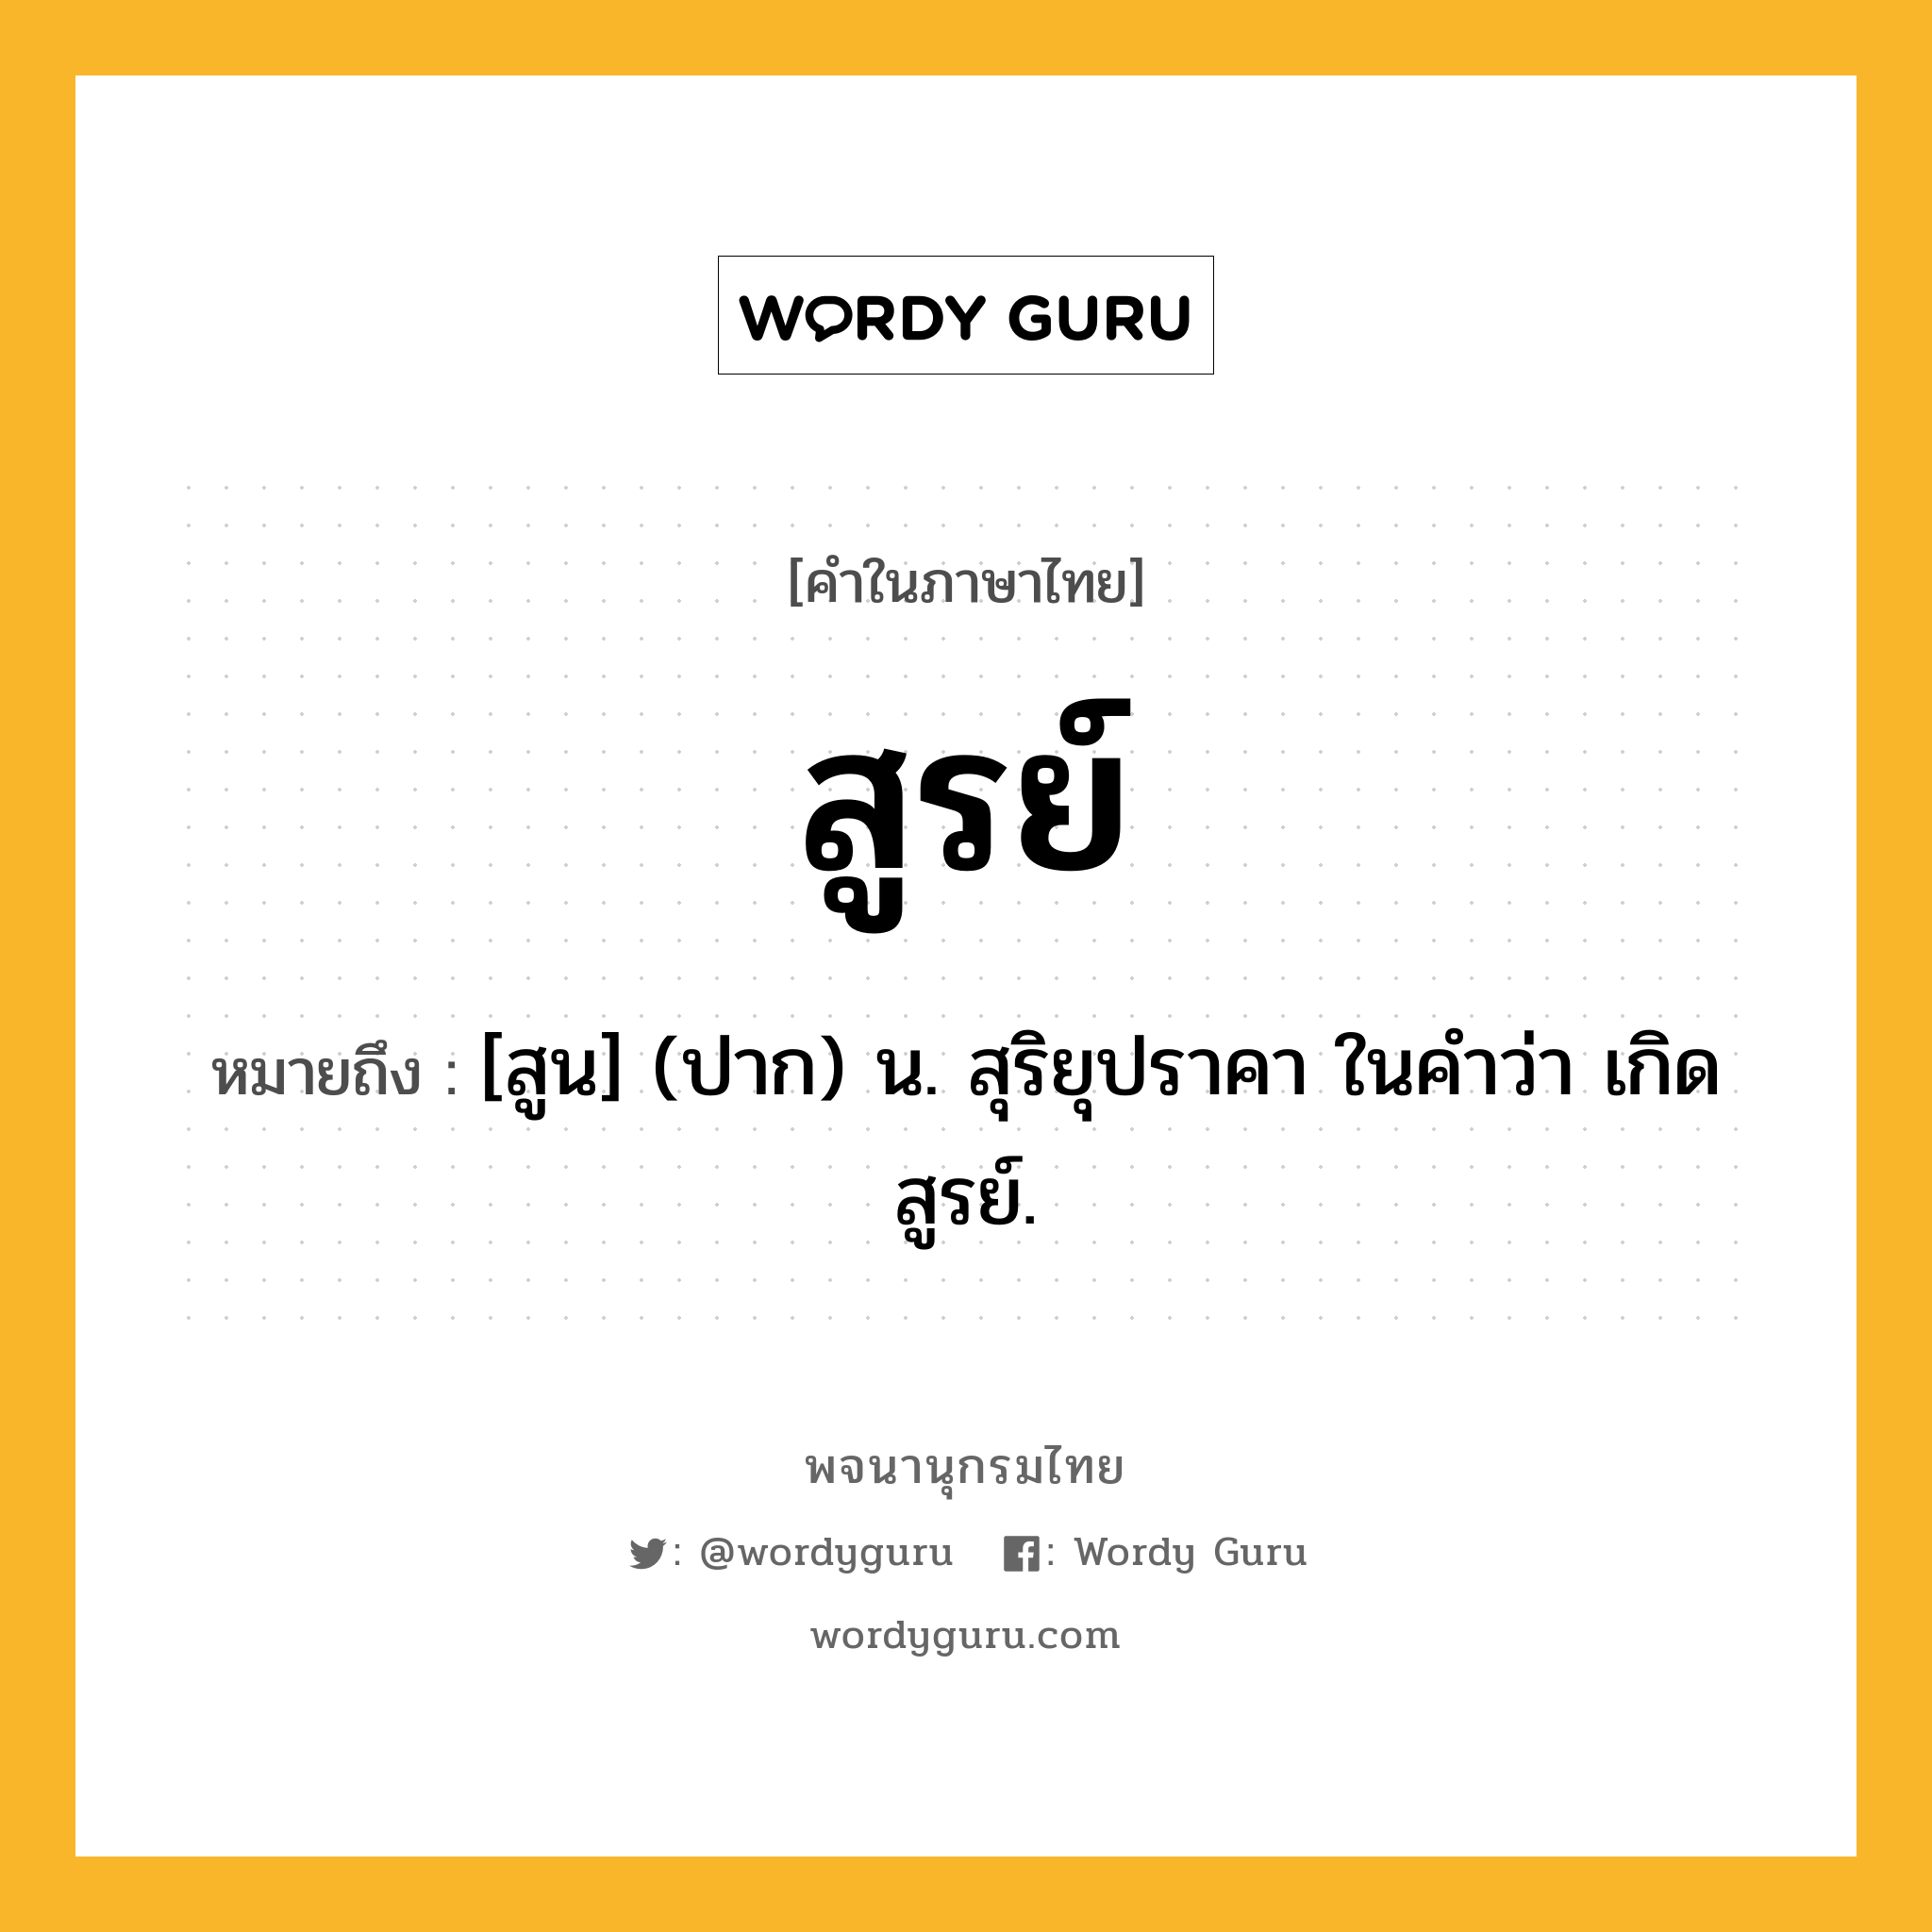 สูรย์ หมายถึงอะไร?, คำในภาษาไทย สูรย์ หมายถึง [สูน] (ปาก) น. สุริยุปราคา ในคำว่า เกิดสูรย์.